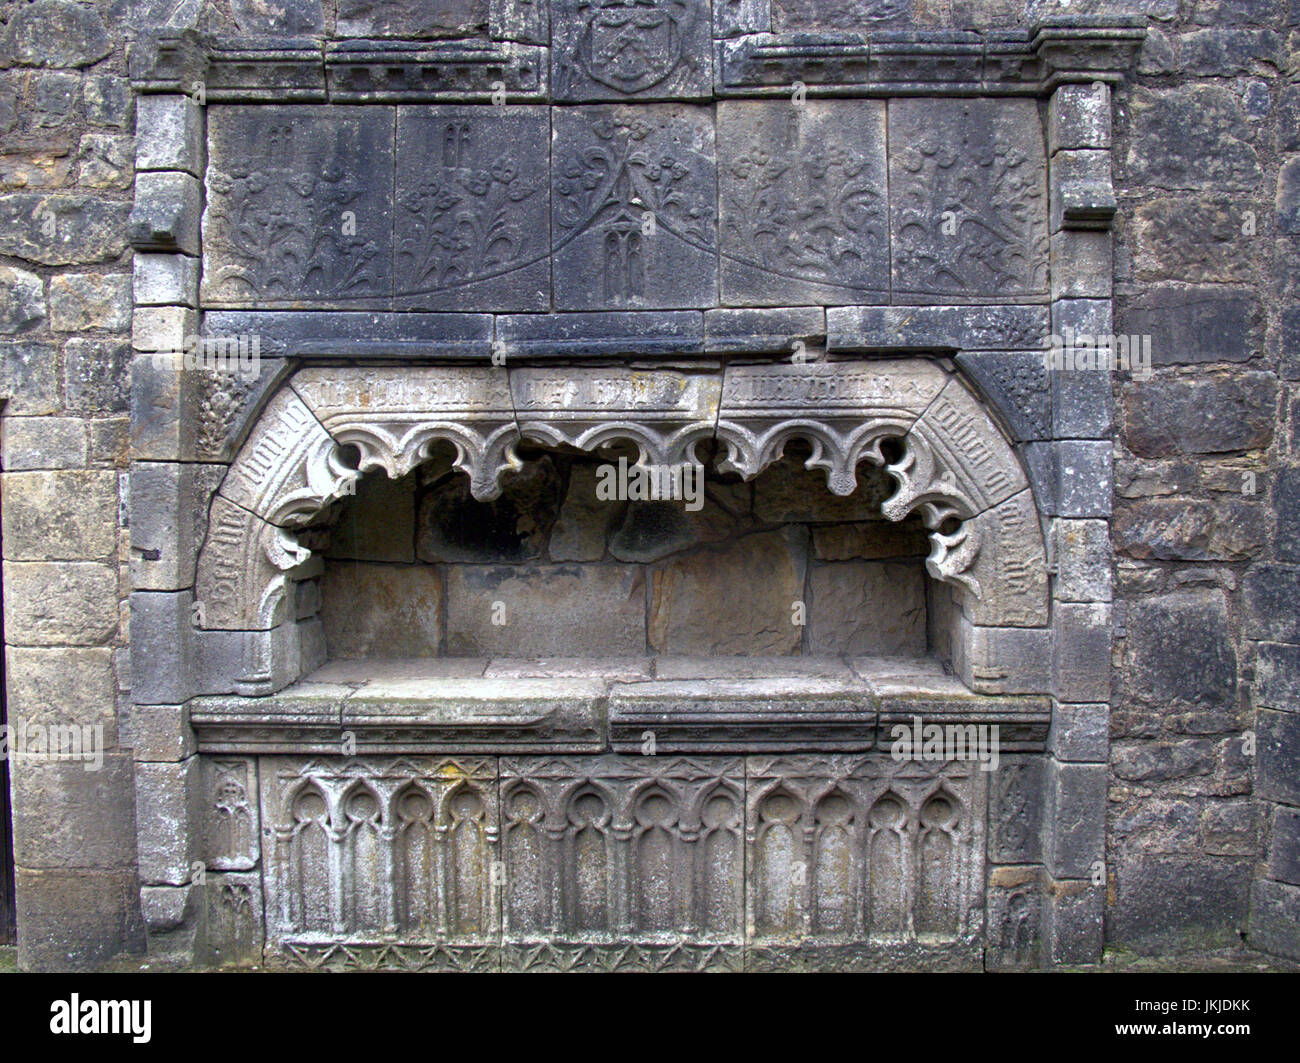 Castillo semple colegiata y lord sempill's Tomb, lochwinnoch Foto de stock